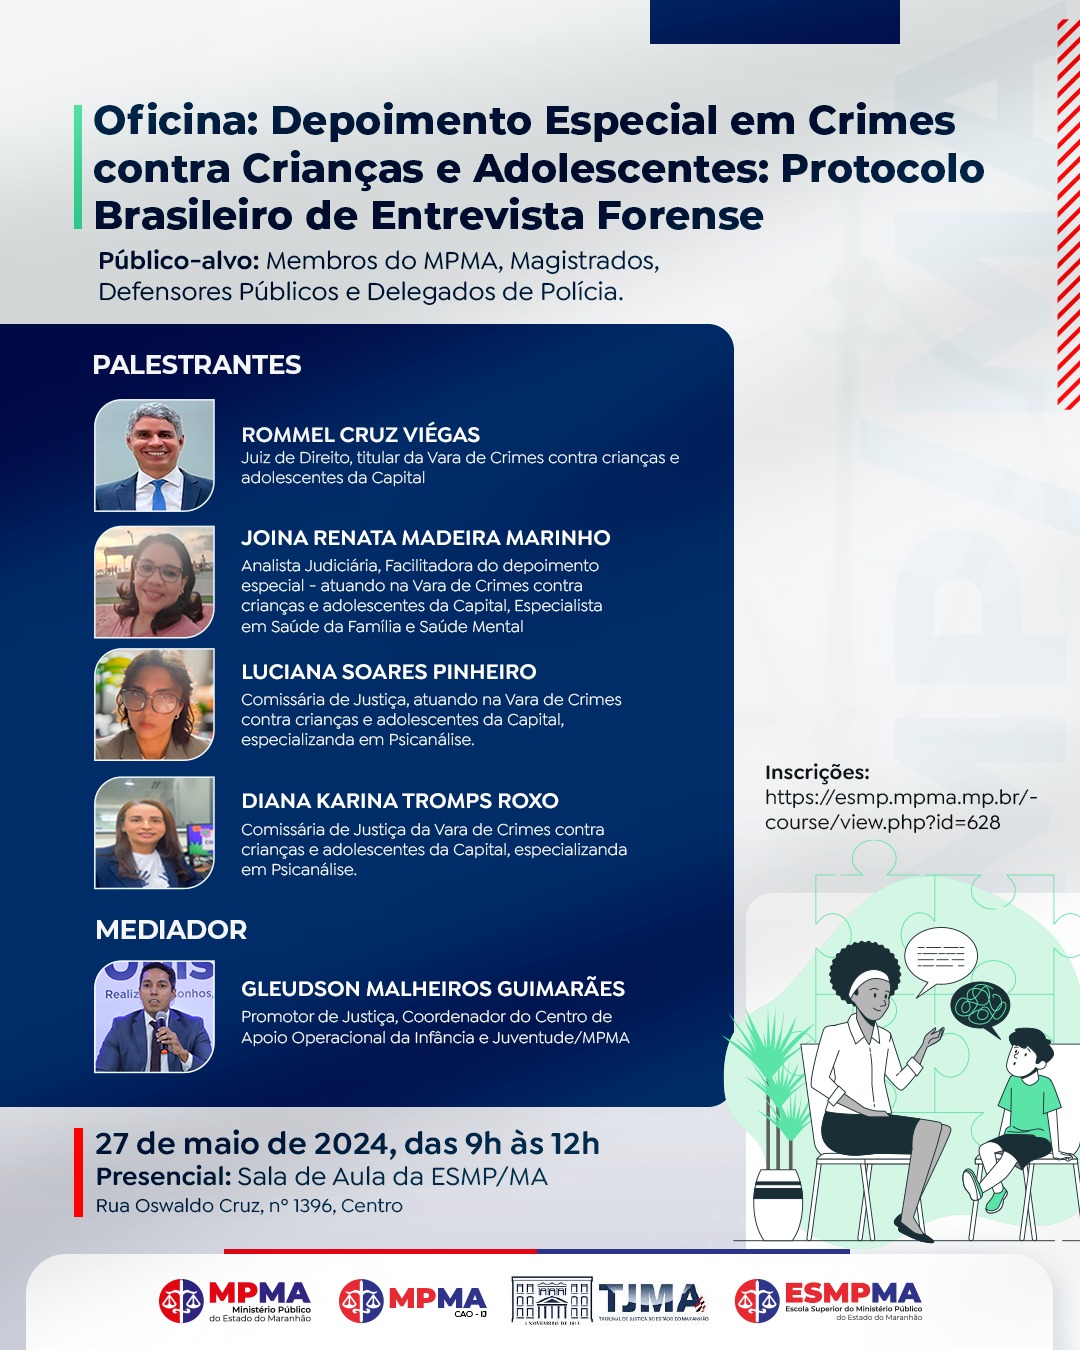 Oficina "Depoimento Especial em Crimes contra Crianças e Adolescentes: Protocolo Brasileiro de Entrevista Forense"